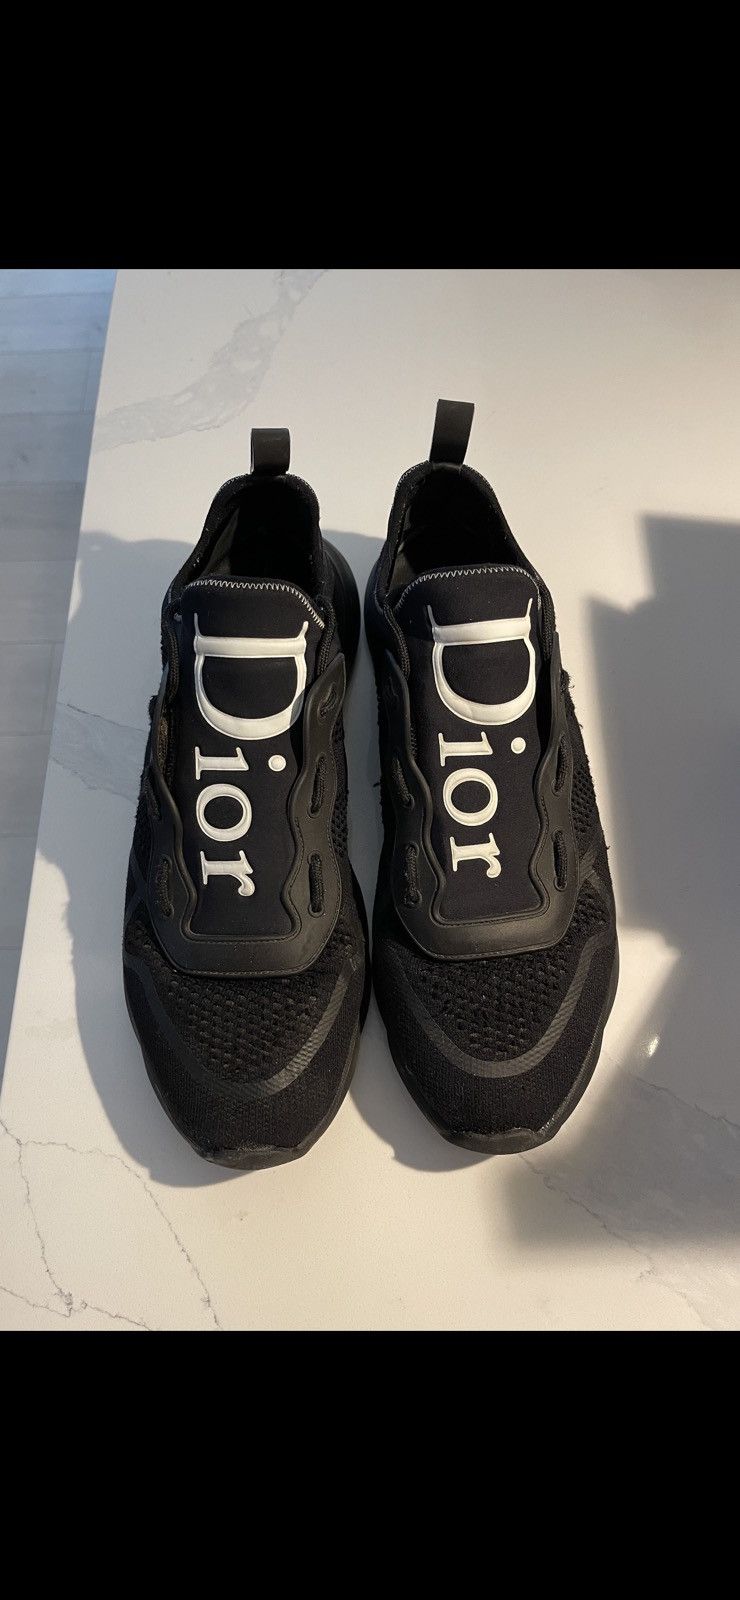 Dior Dior B21 Neo Black | Grailed